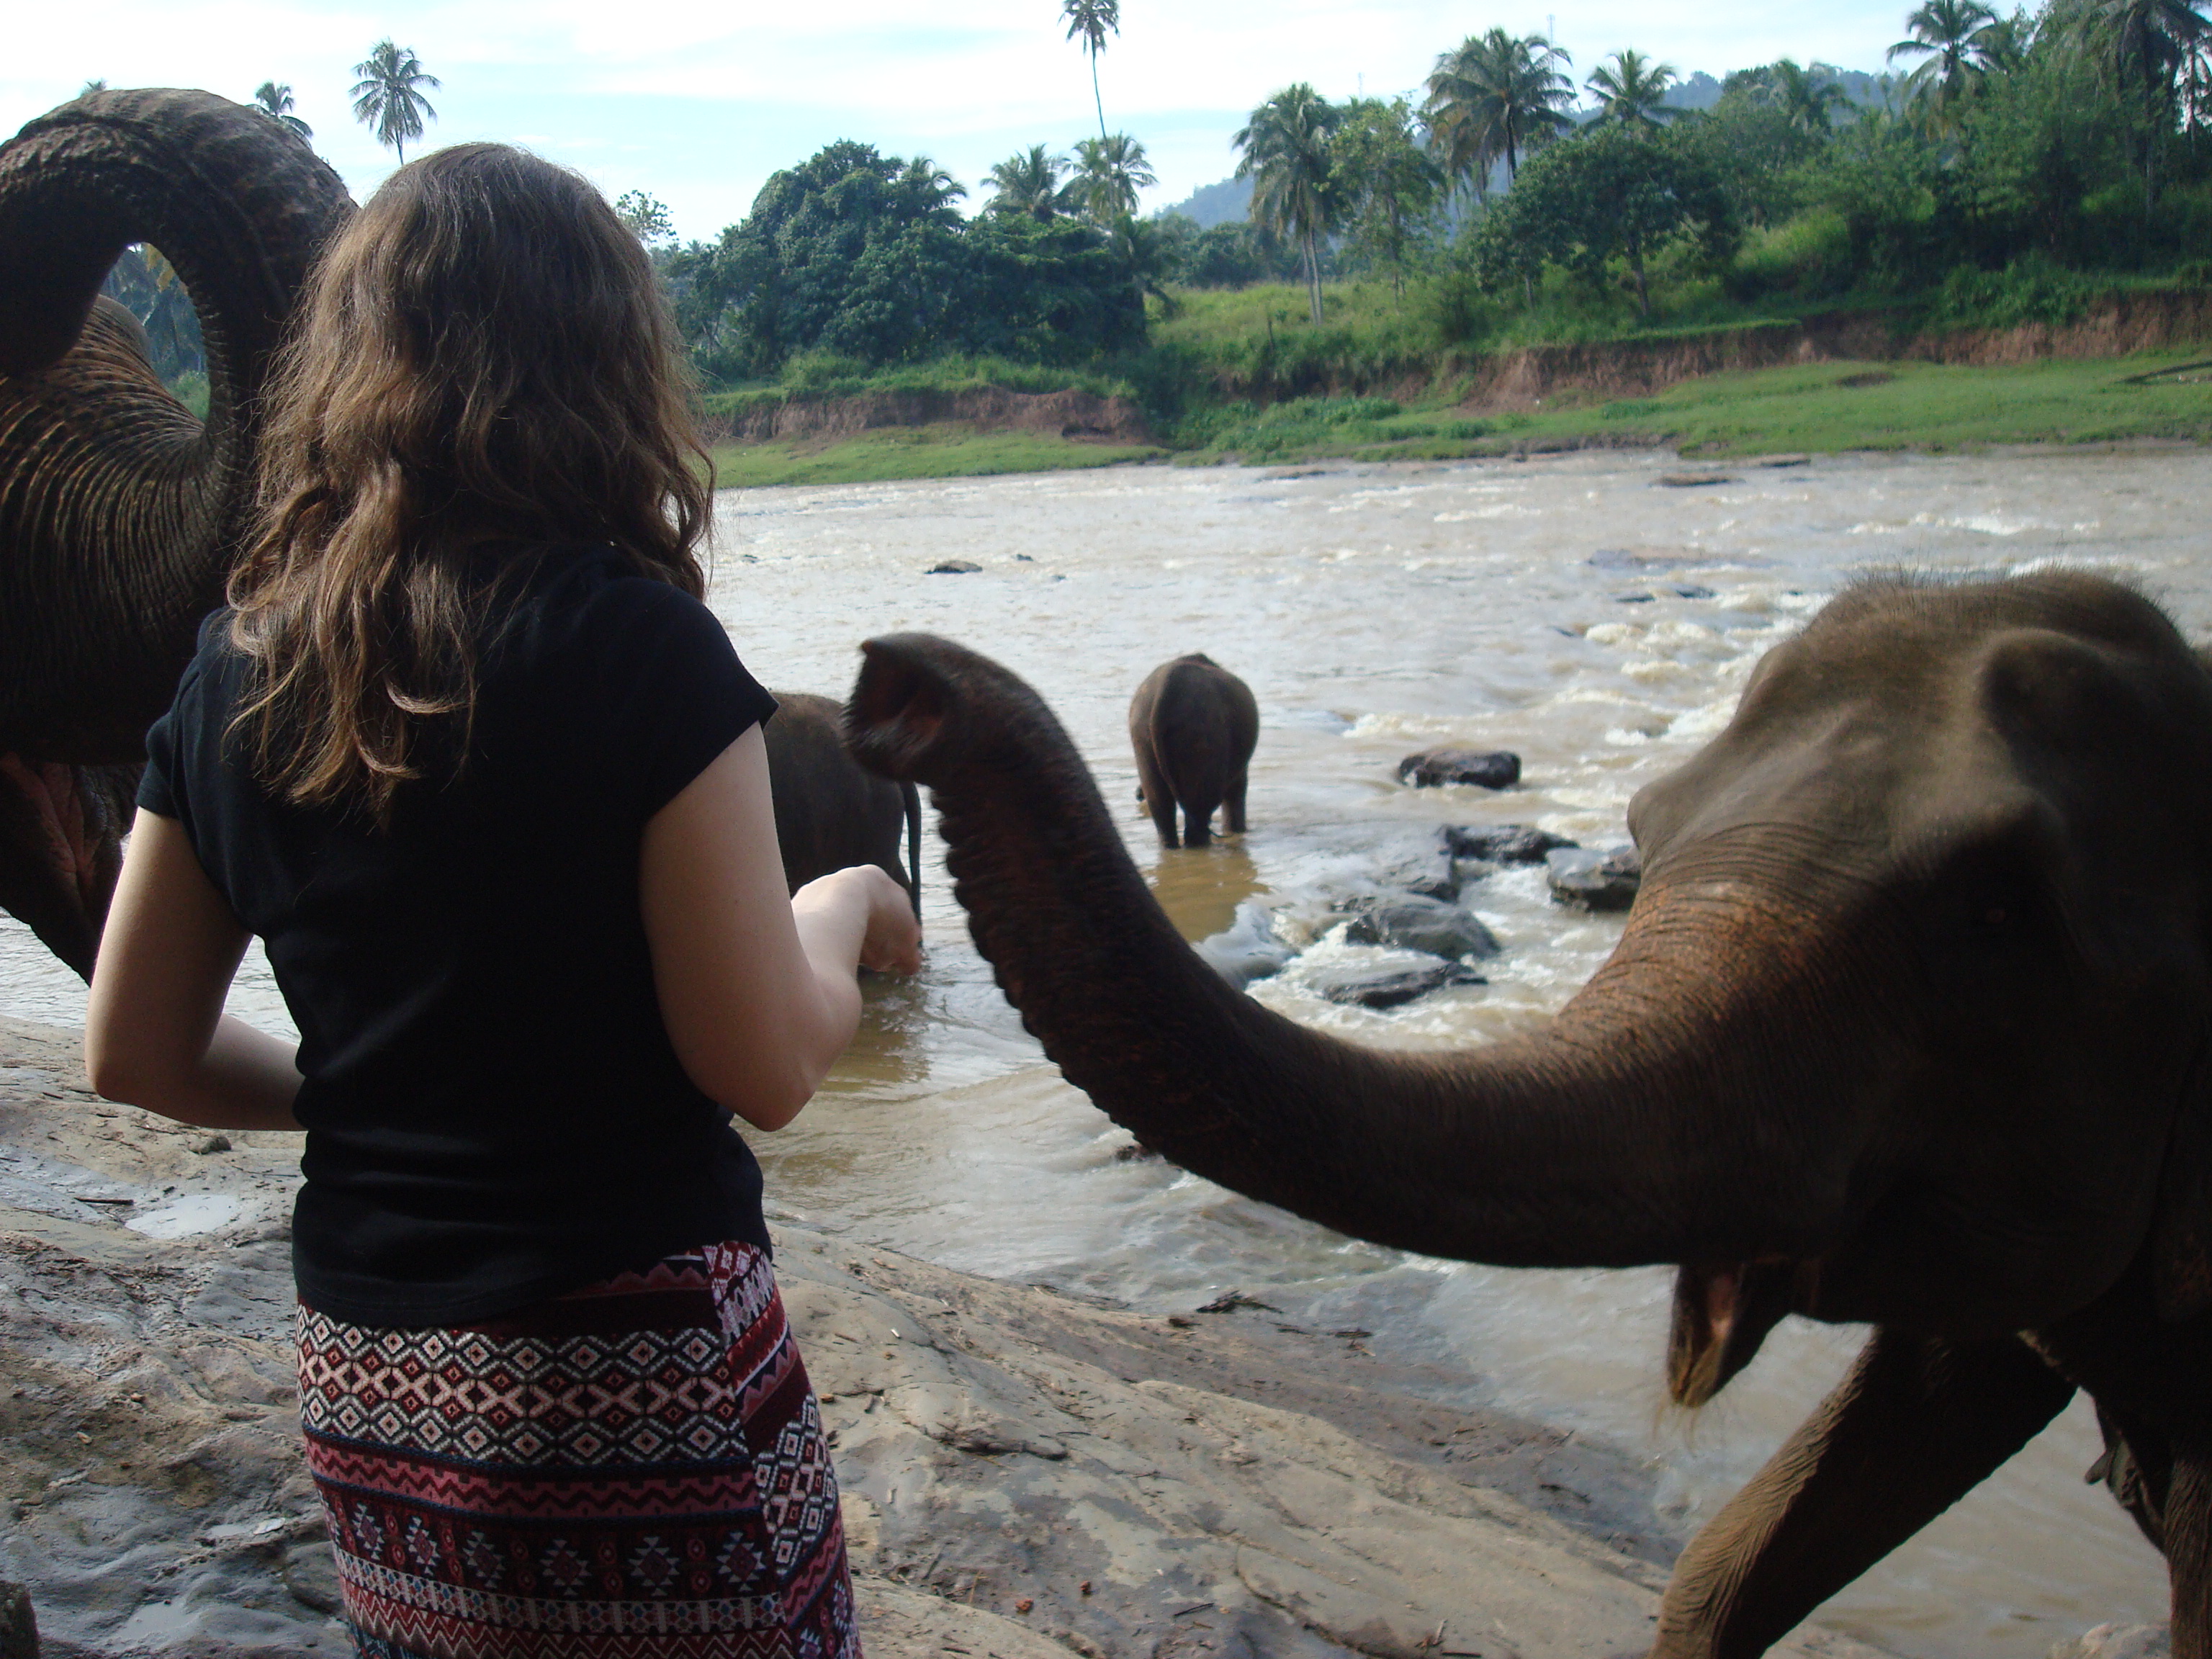 author Tamara feeding an elephant